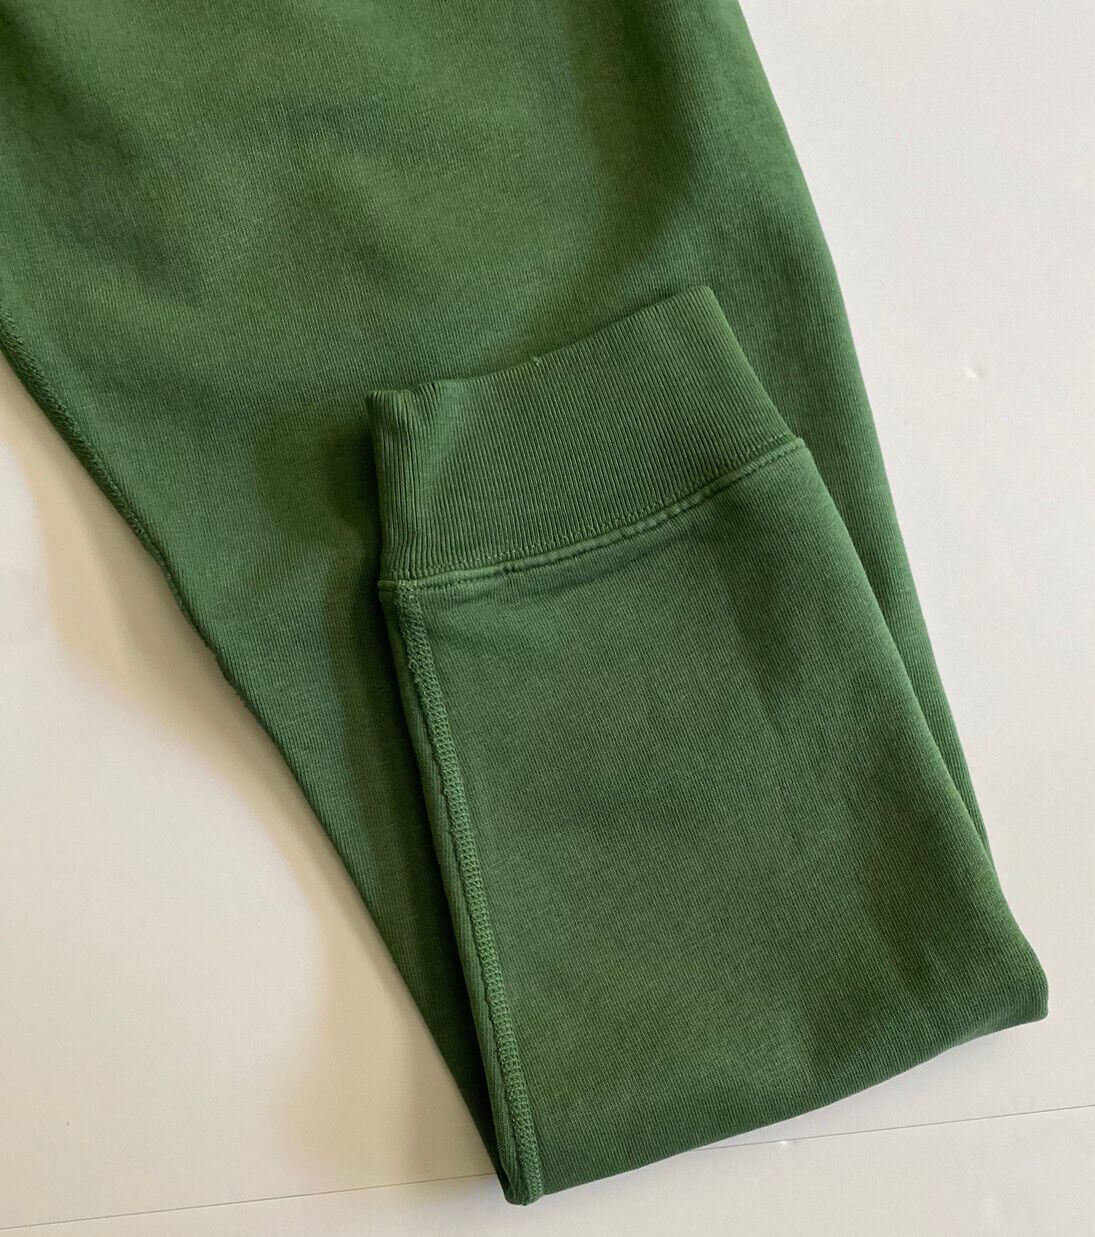 NWT $168 Polo Ralph Lauren Men's Modern Green Casual Pants XL